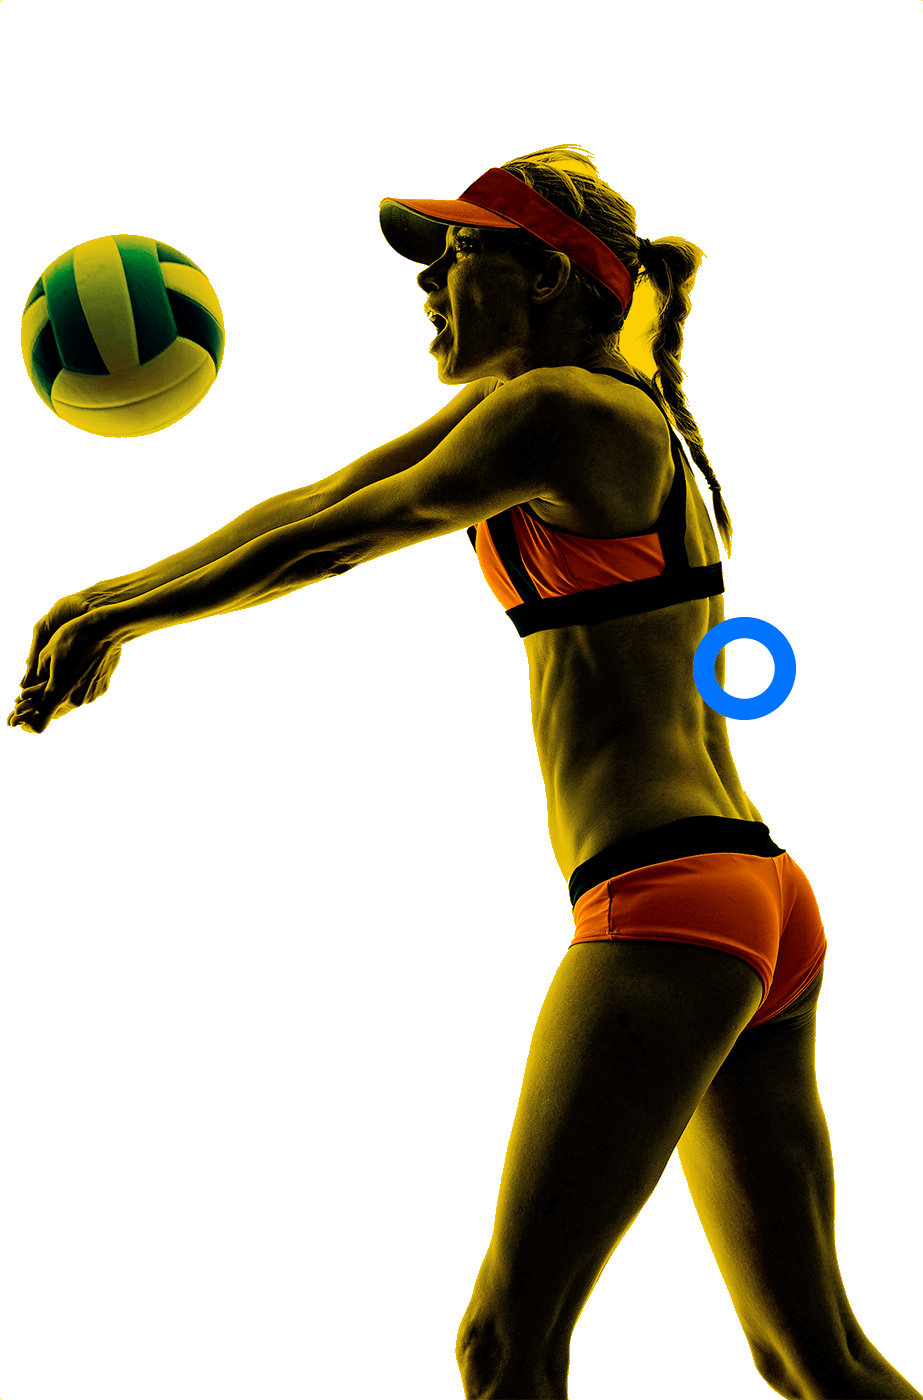 En la foto, una jugadorea voleibol playa con ambos brazos extendidos a punto de recibir el balón.